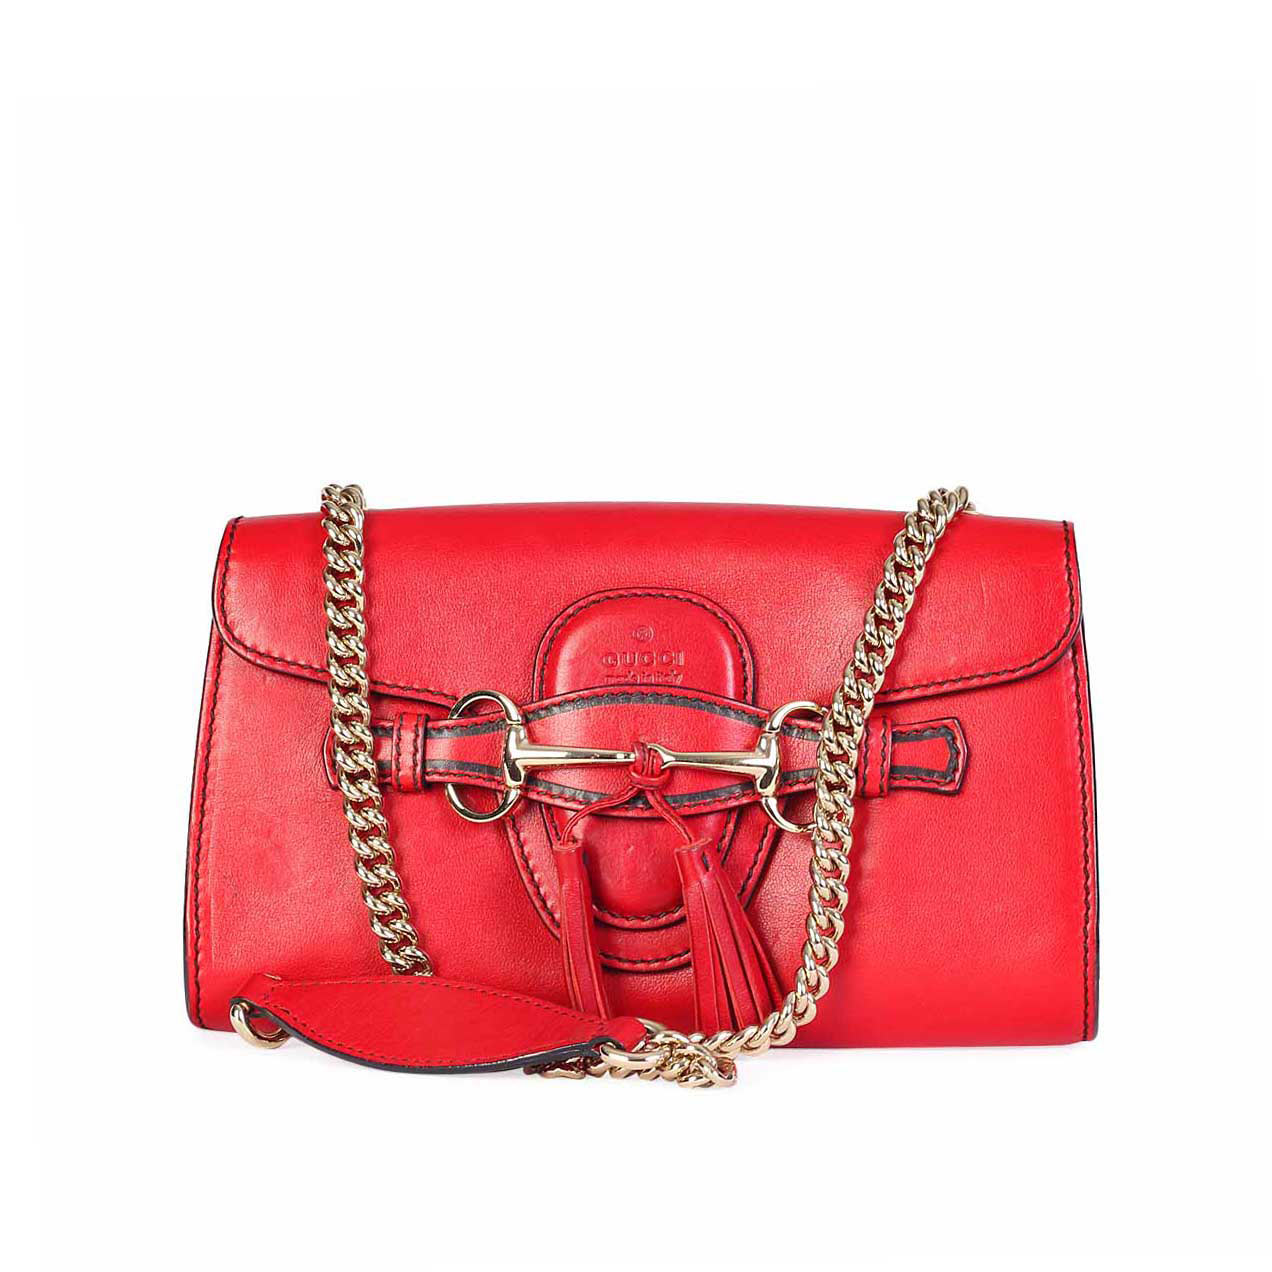 gucci purse with chain straps